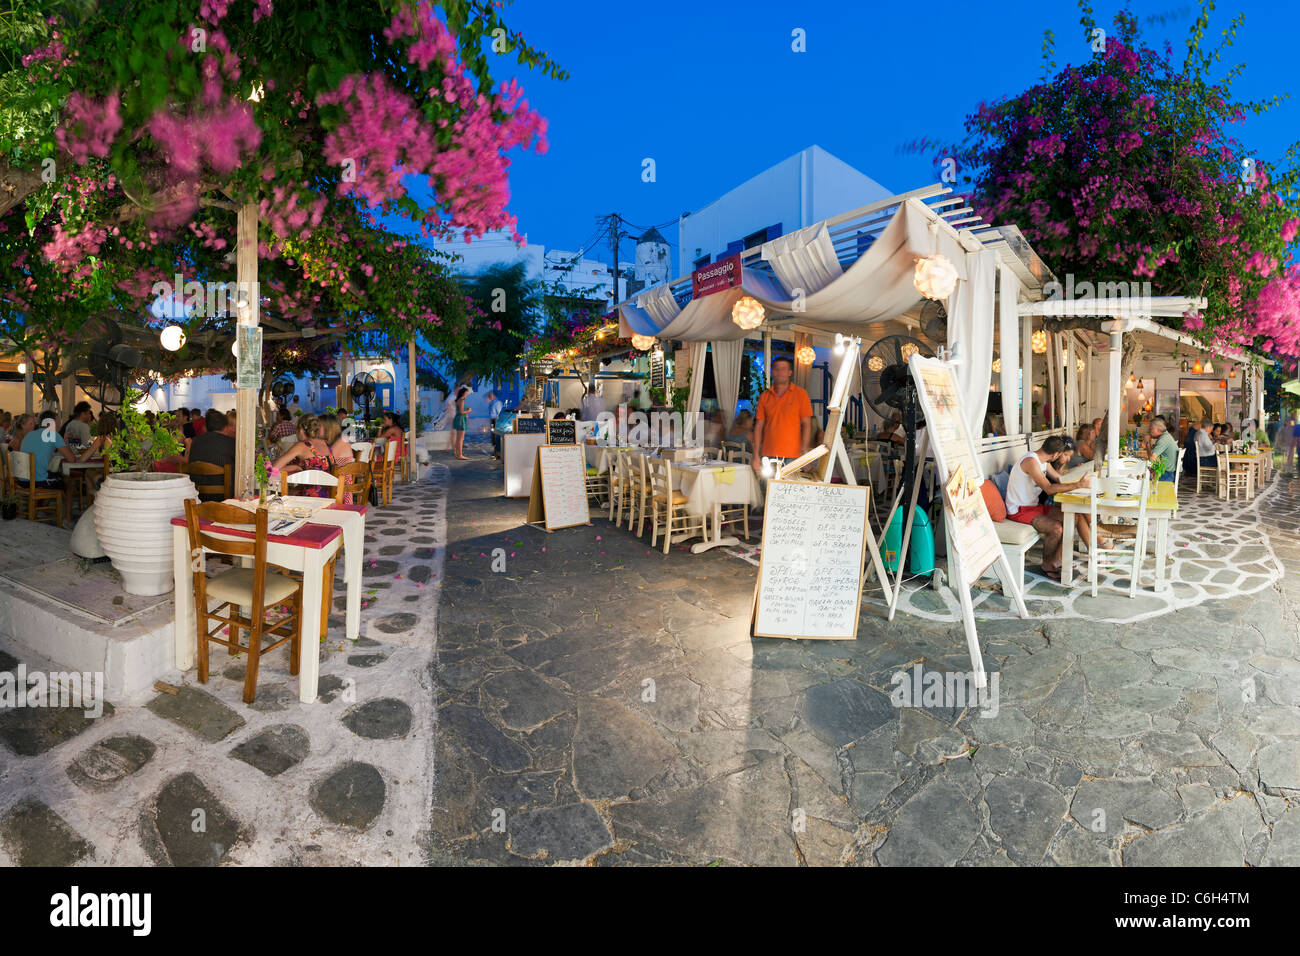 Ristoranti nella città vecchia, Mykonos (Hora), Isole Cicladi Grecia, Europa Foto Stock